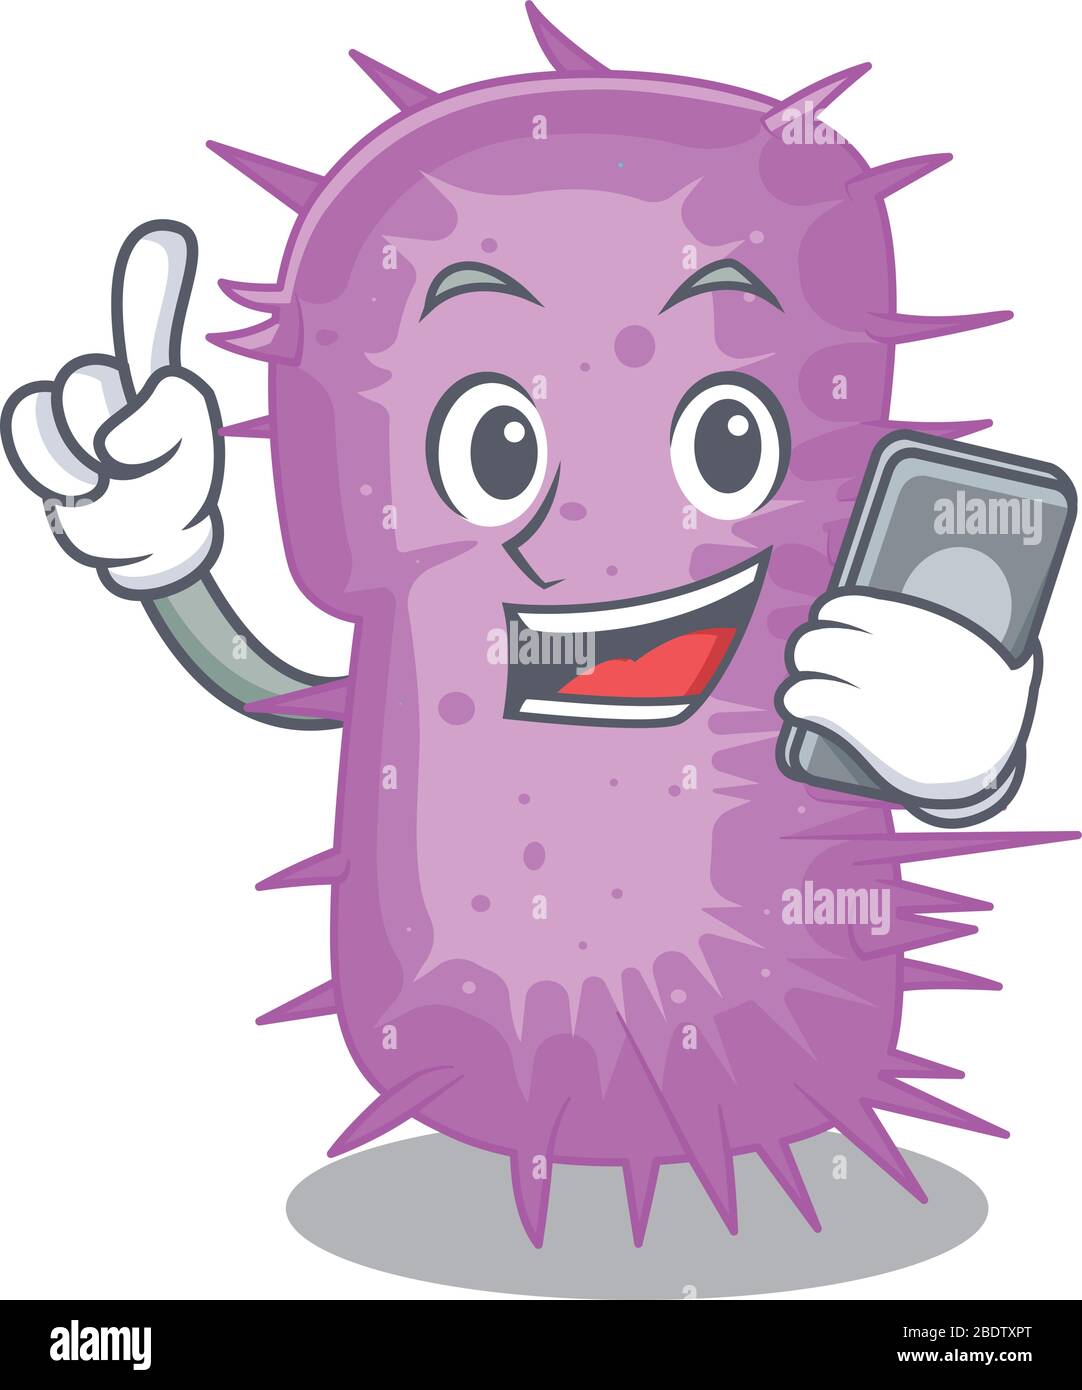 Acinetobacter baumannii cartoon character speaking on phone Stock Vector